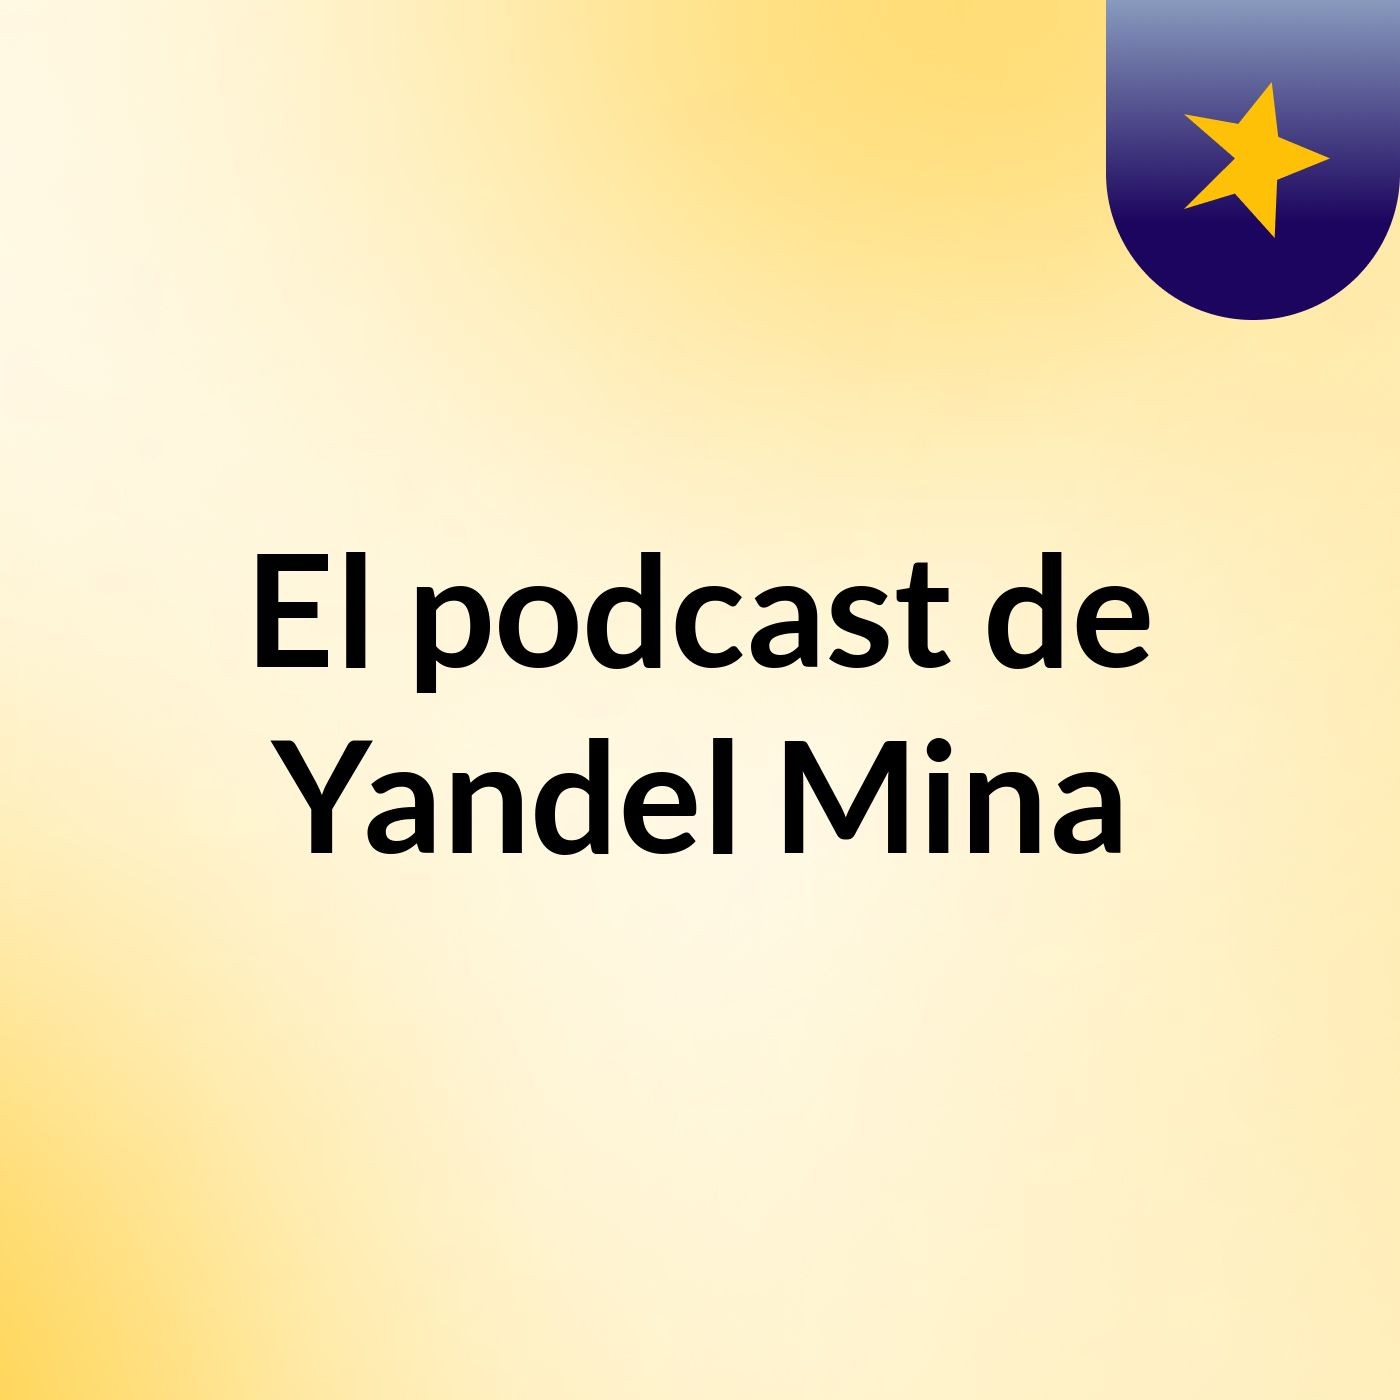 El podcast de Yandel Mina